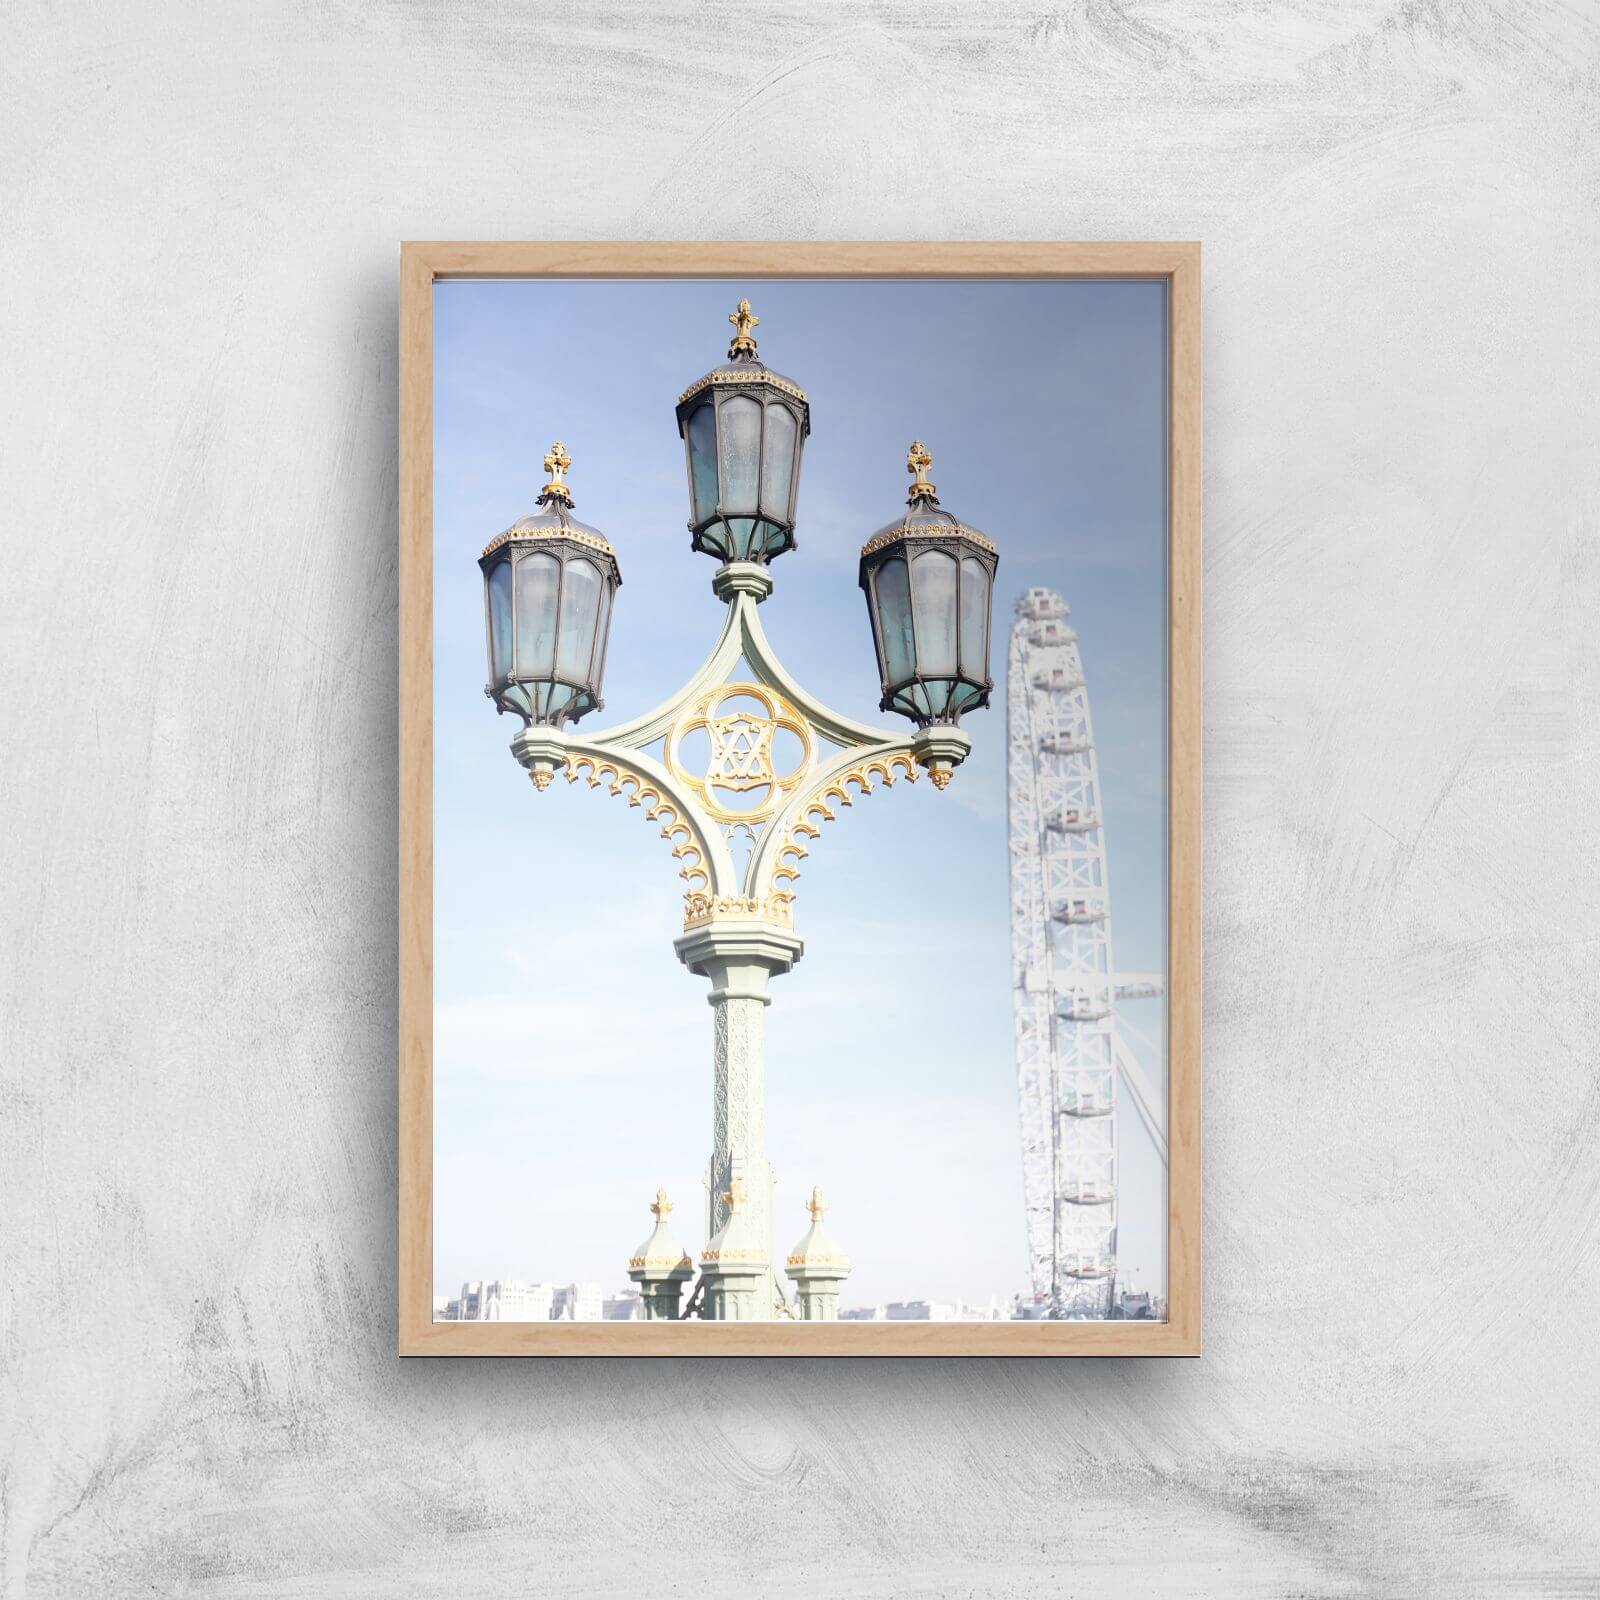 Street Lamps Giclee Art Print - A4 - Wooden Frame